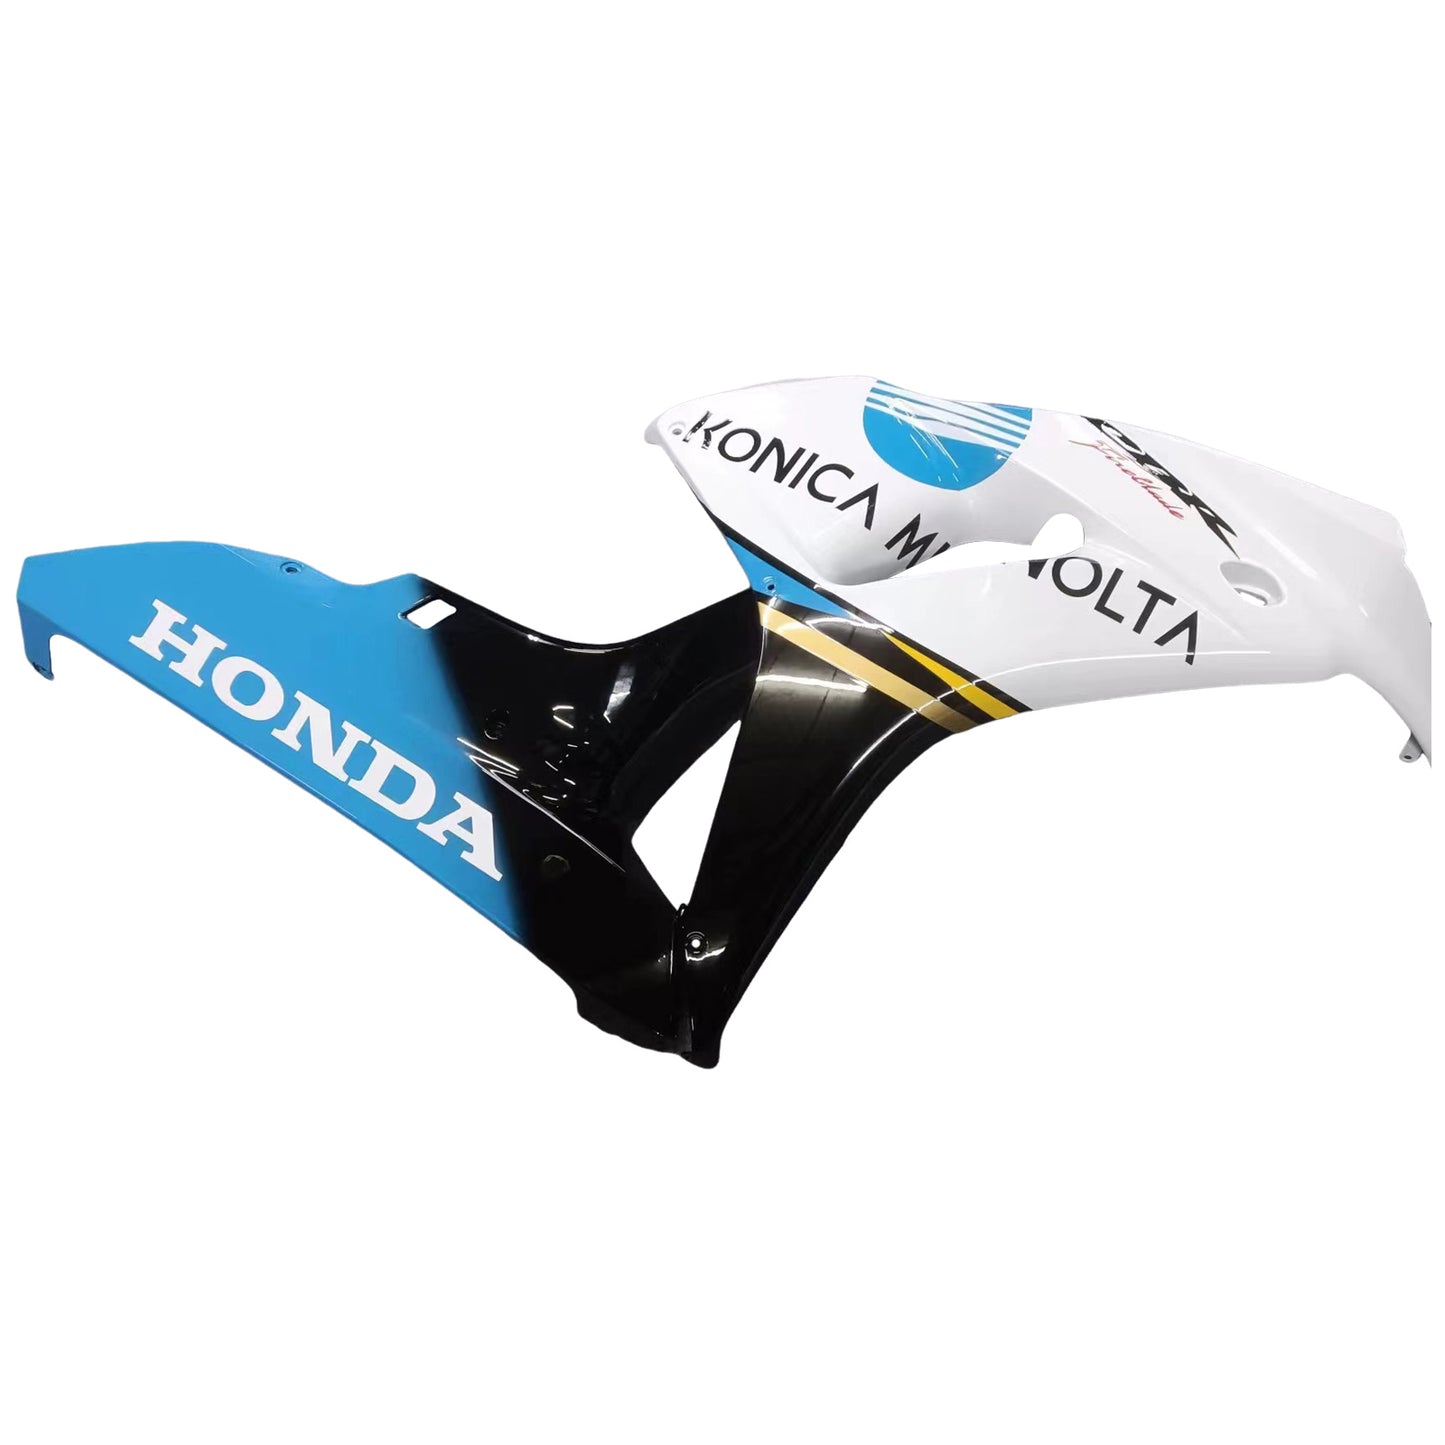 Amotopart-Verkleidungen Honda CBR1000RR 2006-2007 Verkleidung wei? Konica Minolta Racing Kiting Kit